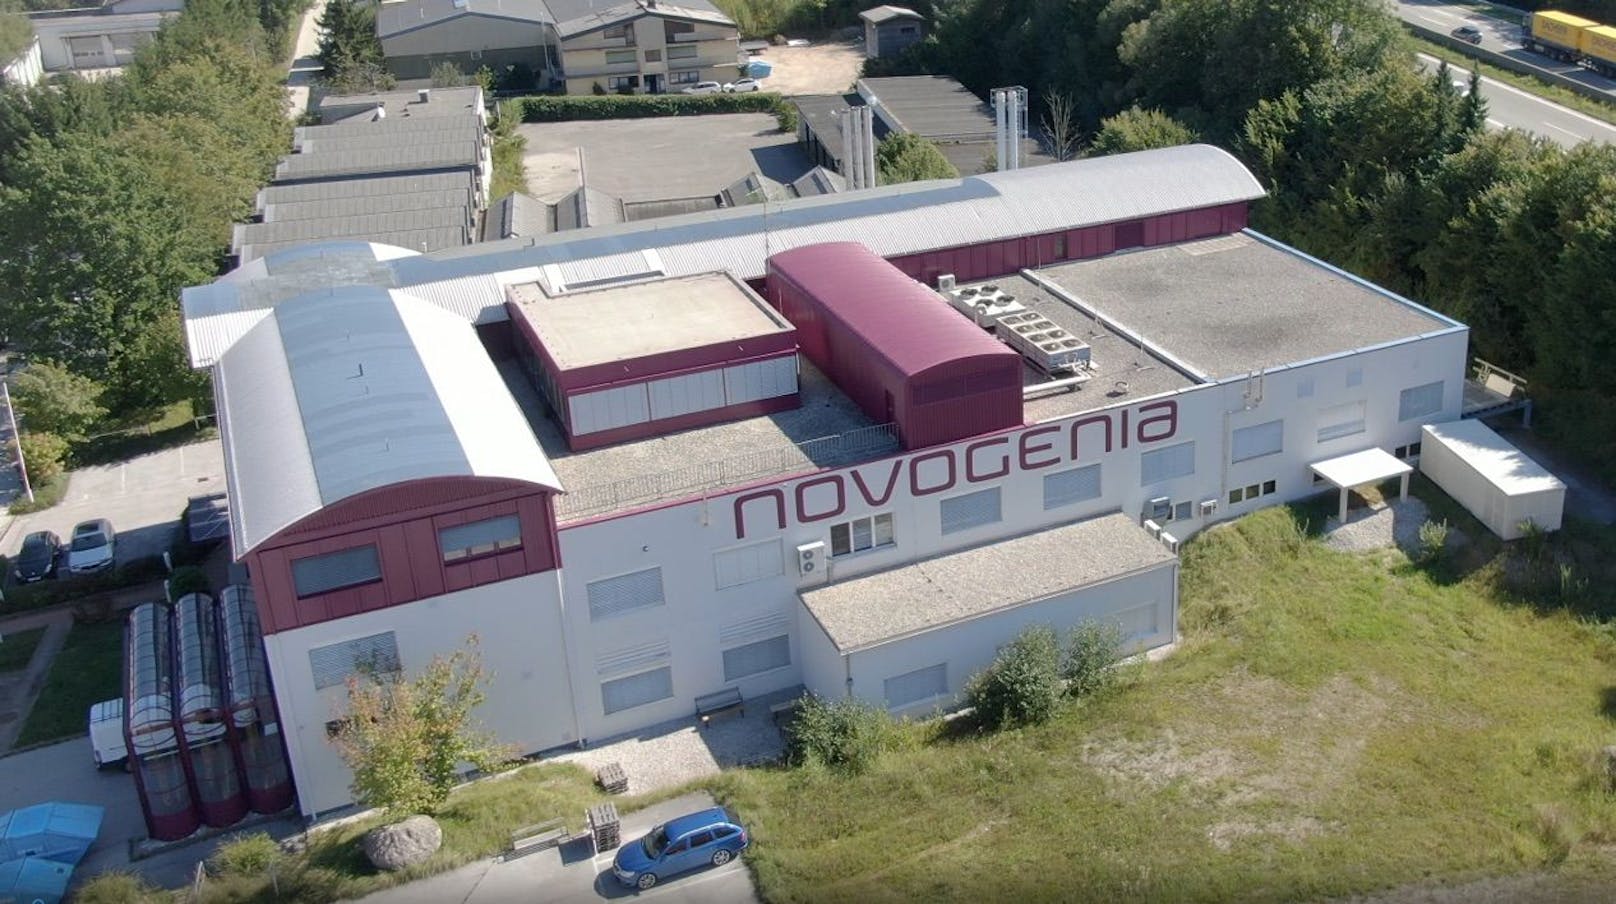 Hacker überschwemmten das Corona-Labor Novogenia in den letzten Tagen mit Anfragen.